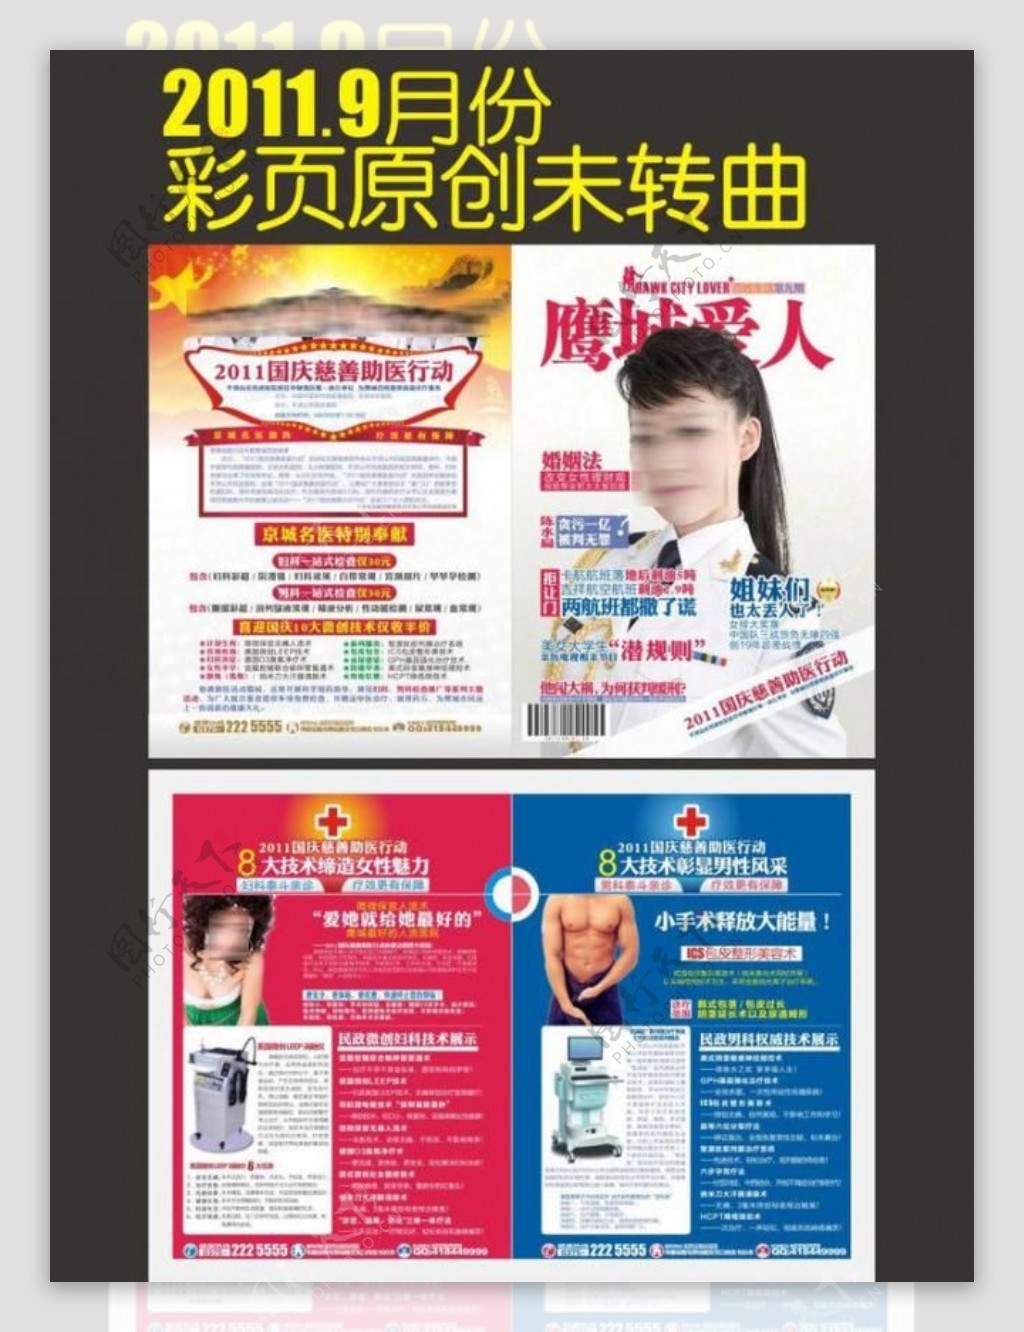 鹰城爱人2011年9月杂志彩页图片